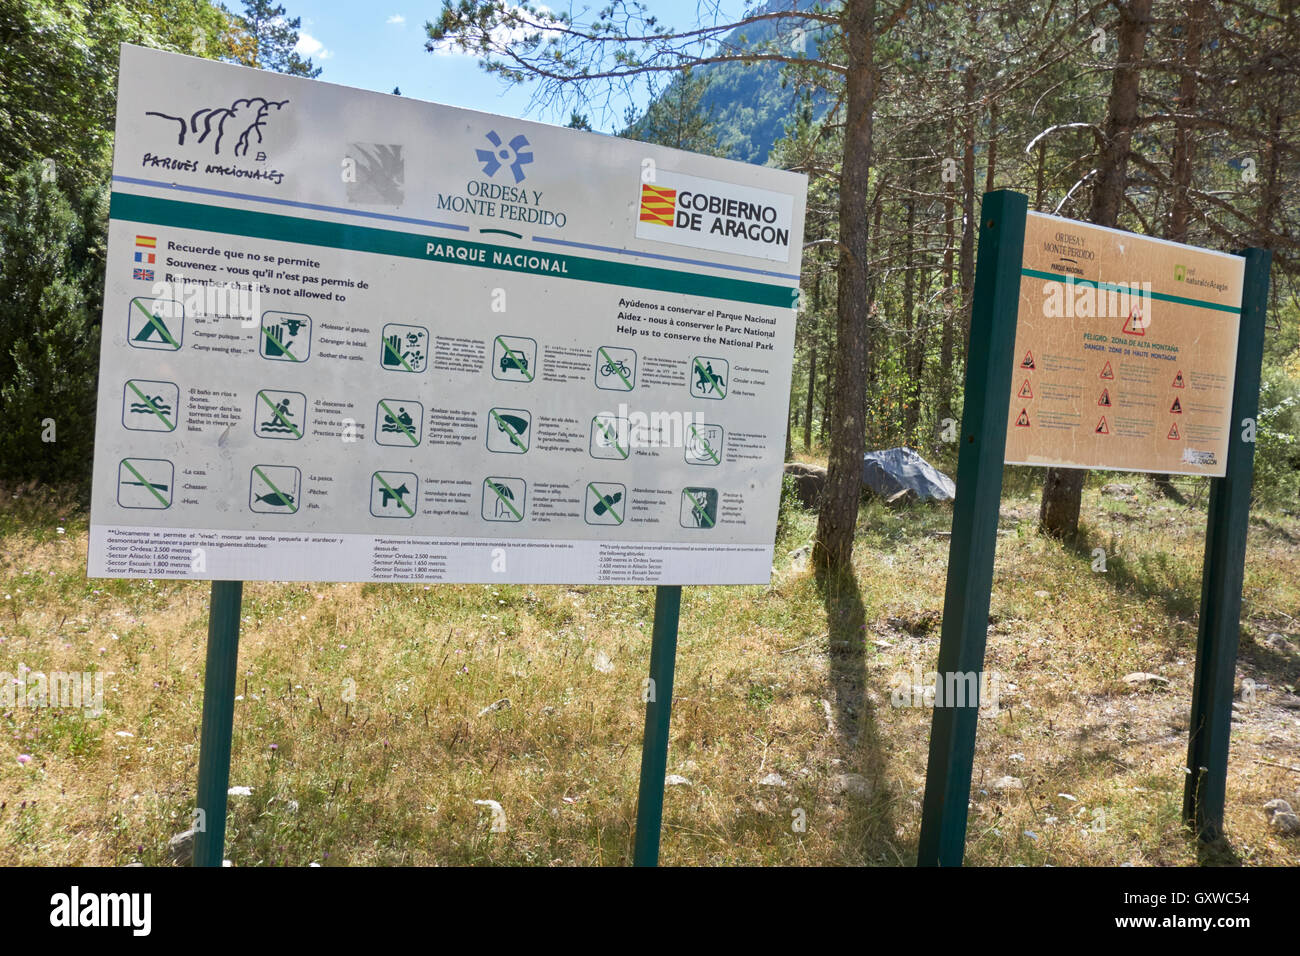 Information panels at 'la pradera' in Ordesa y Monte Perdido National Park. Pyrenees. Aragón. Spain. Stock Photo